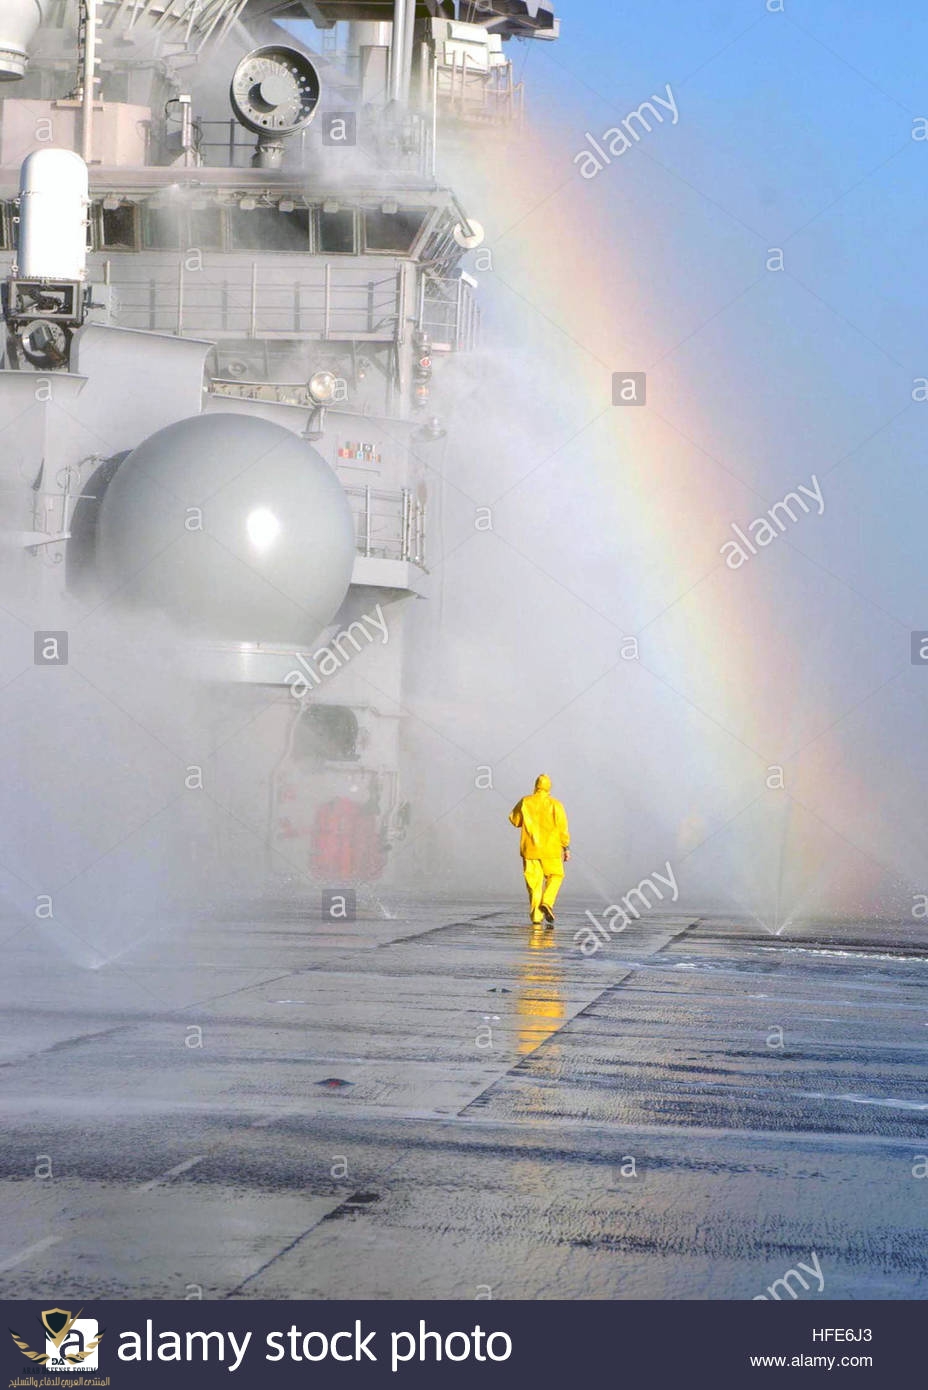 041206-n-3455p-008-pacific-ocean-dec-6-2004-a-rainbow-forms-as-a-sailor-HFE6J3.jpg